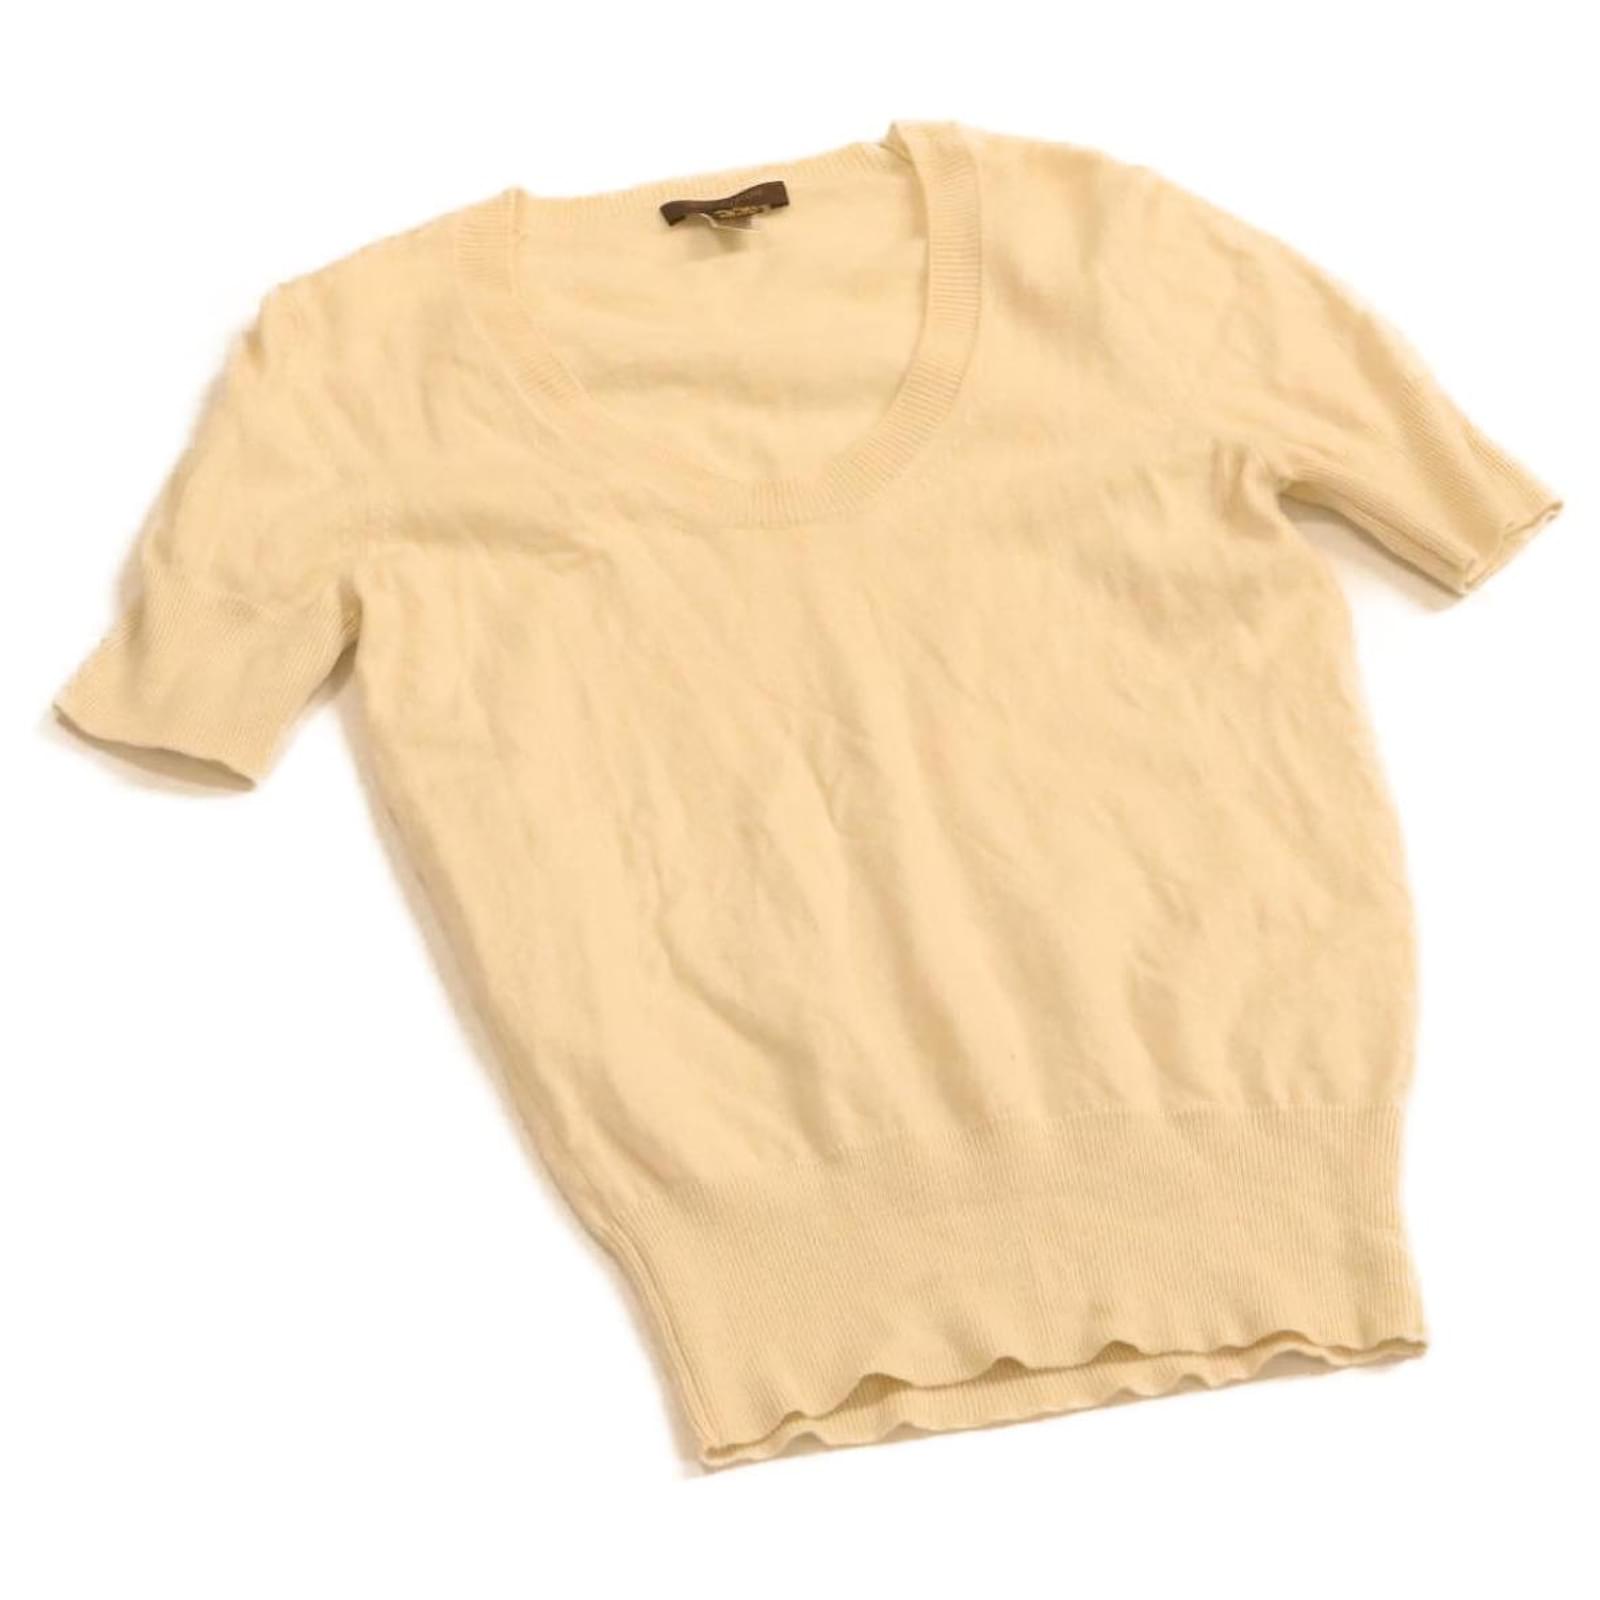 Louis Vuitton Short-sleeved Cotton Shirt